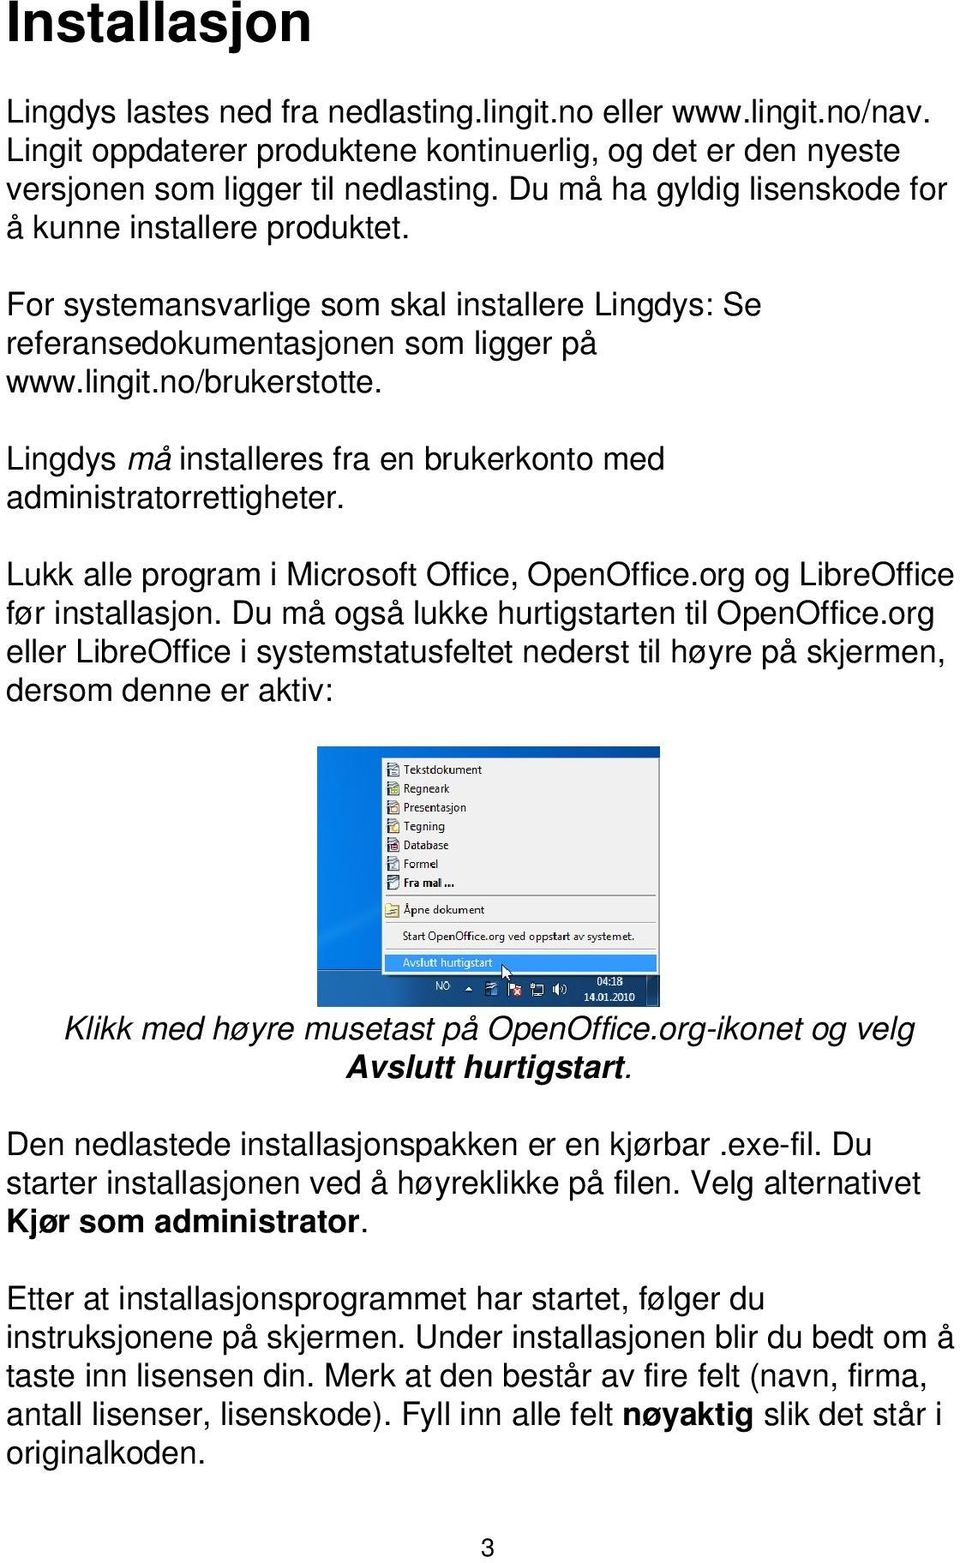 Lingdys må installeres fra en brukerkonto med administratorrettigheter. Lukk alle program i Microsoft Office, OpenOffice.org og LibreOffice før installasjon.